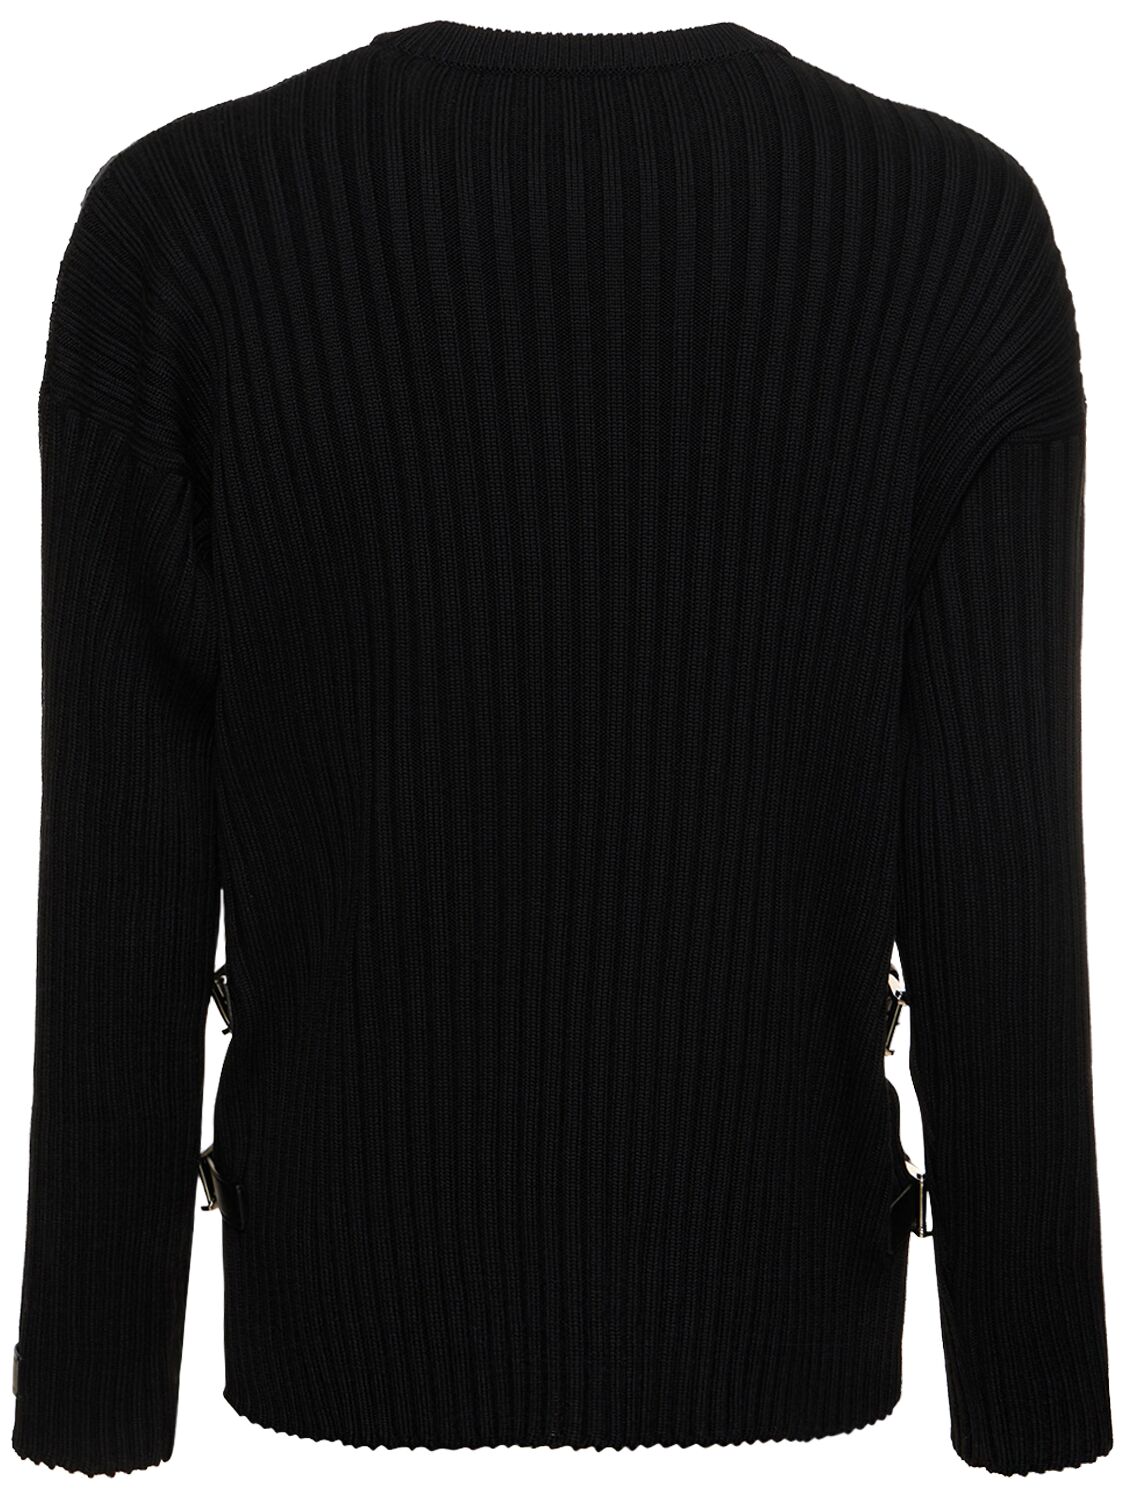 Shop Versace Wool Knit Sweater W/ Buckles In Black